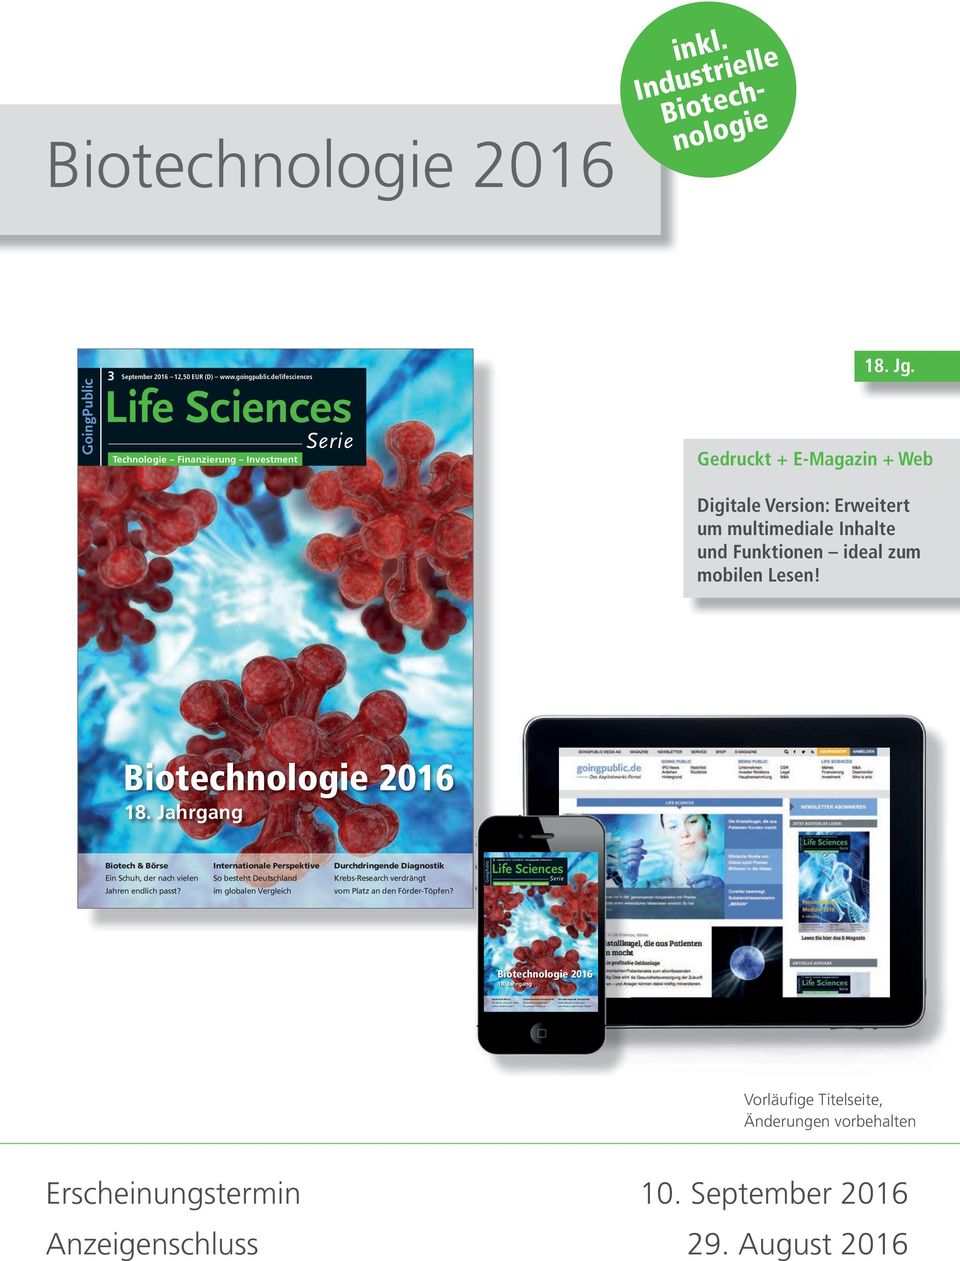 Industrielle Biotechnologie GoingPublic 3 September 2016 12,50 EUR (D) www.goingpublic.de/lifesciences Life Sciences Technologie Finanzierung Investment Serie 18. Jg.